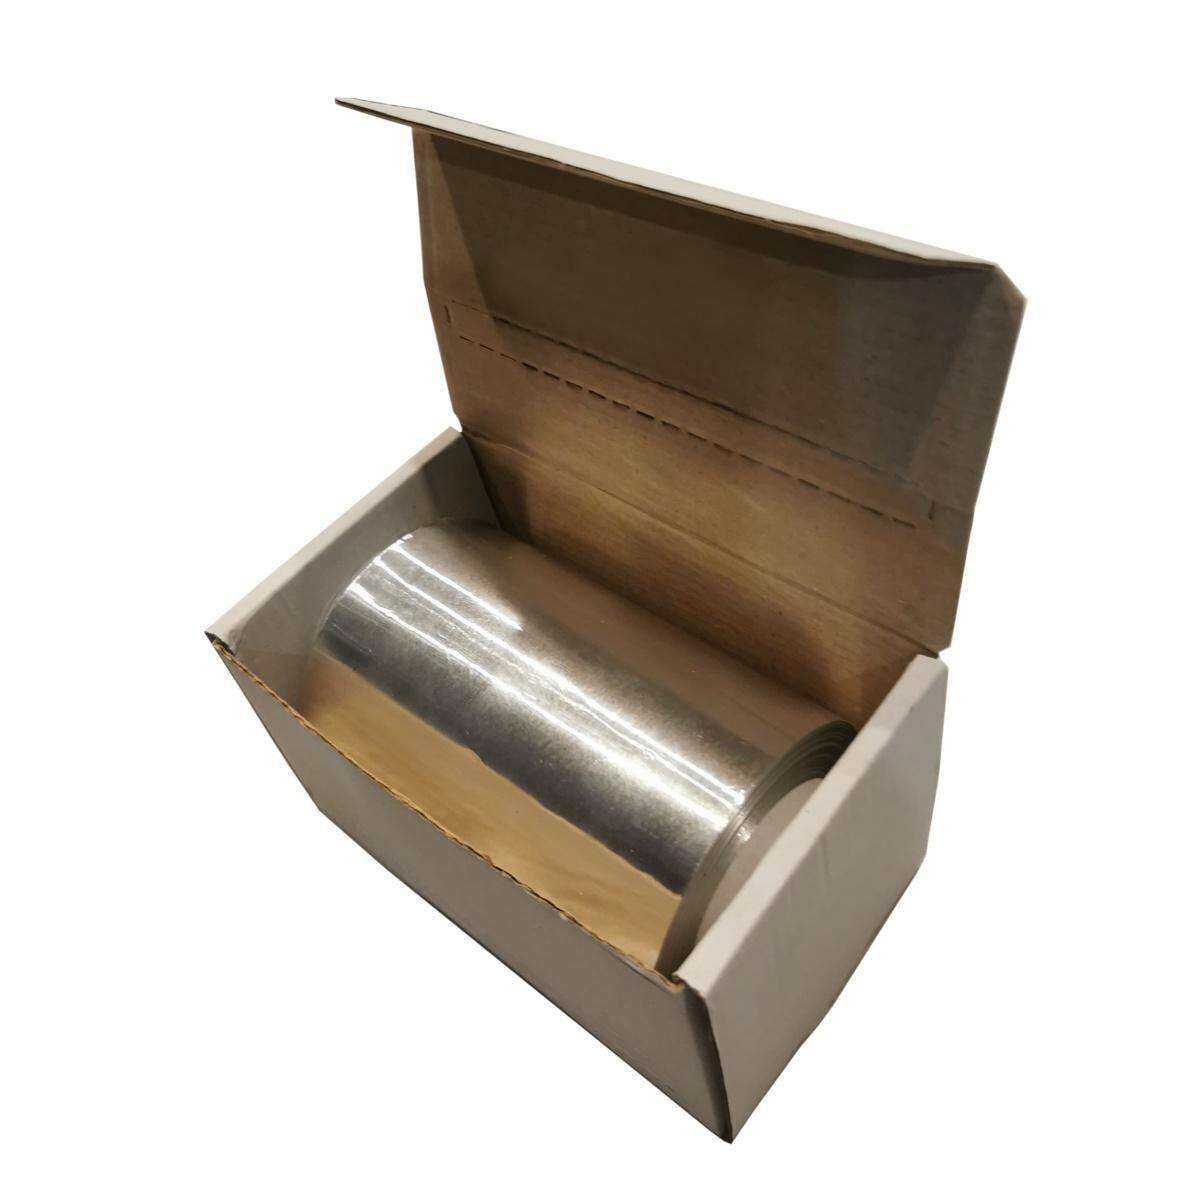 BARBERWORLD - Folia Fryzjerska 0,8kg BOX (Zdjęcie 1)